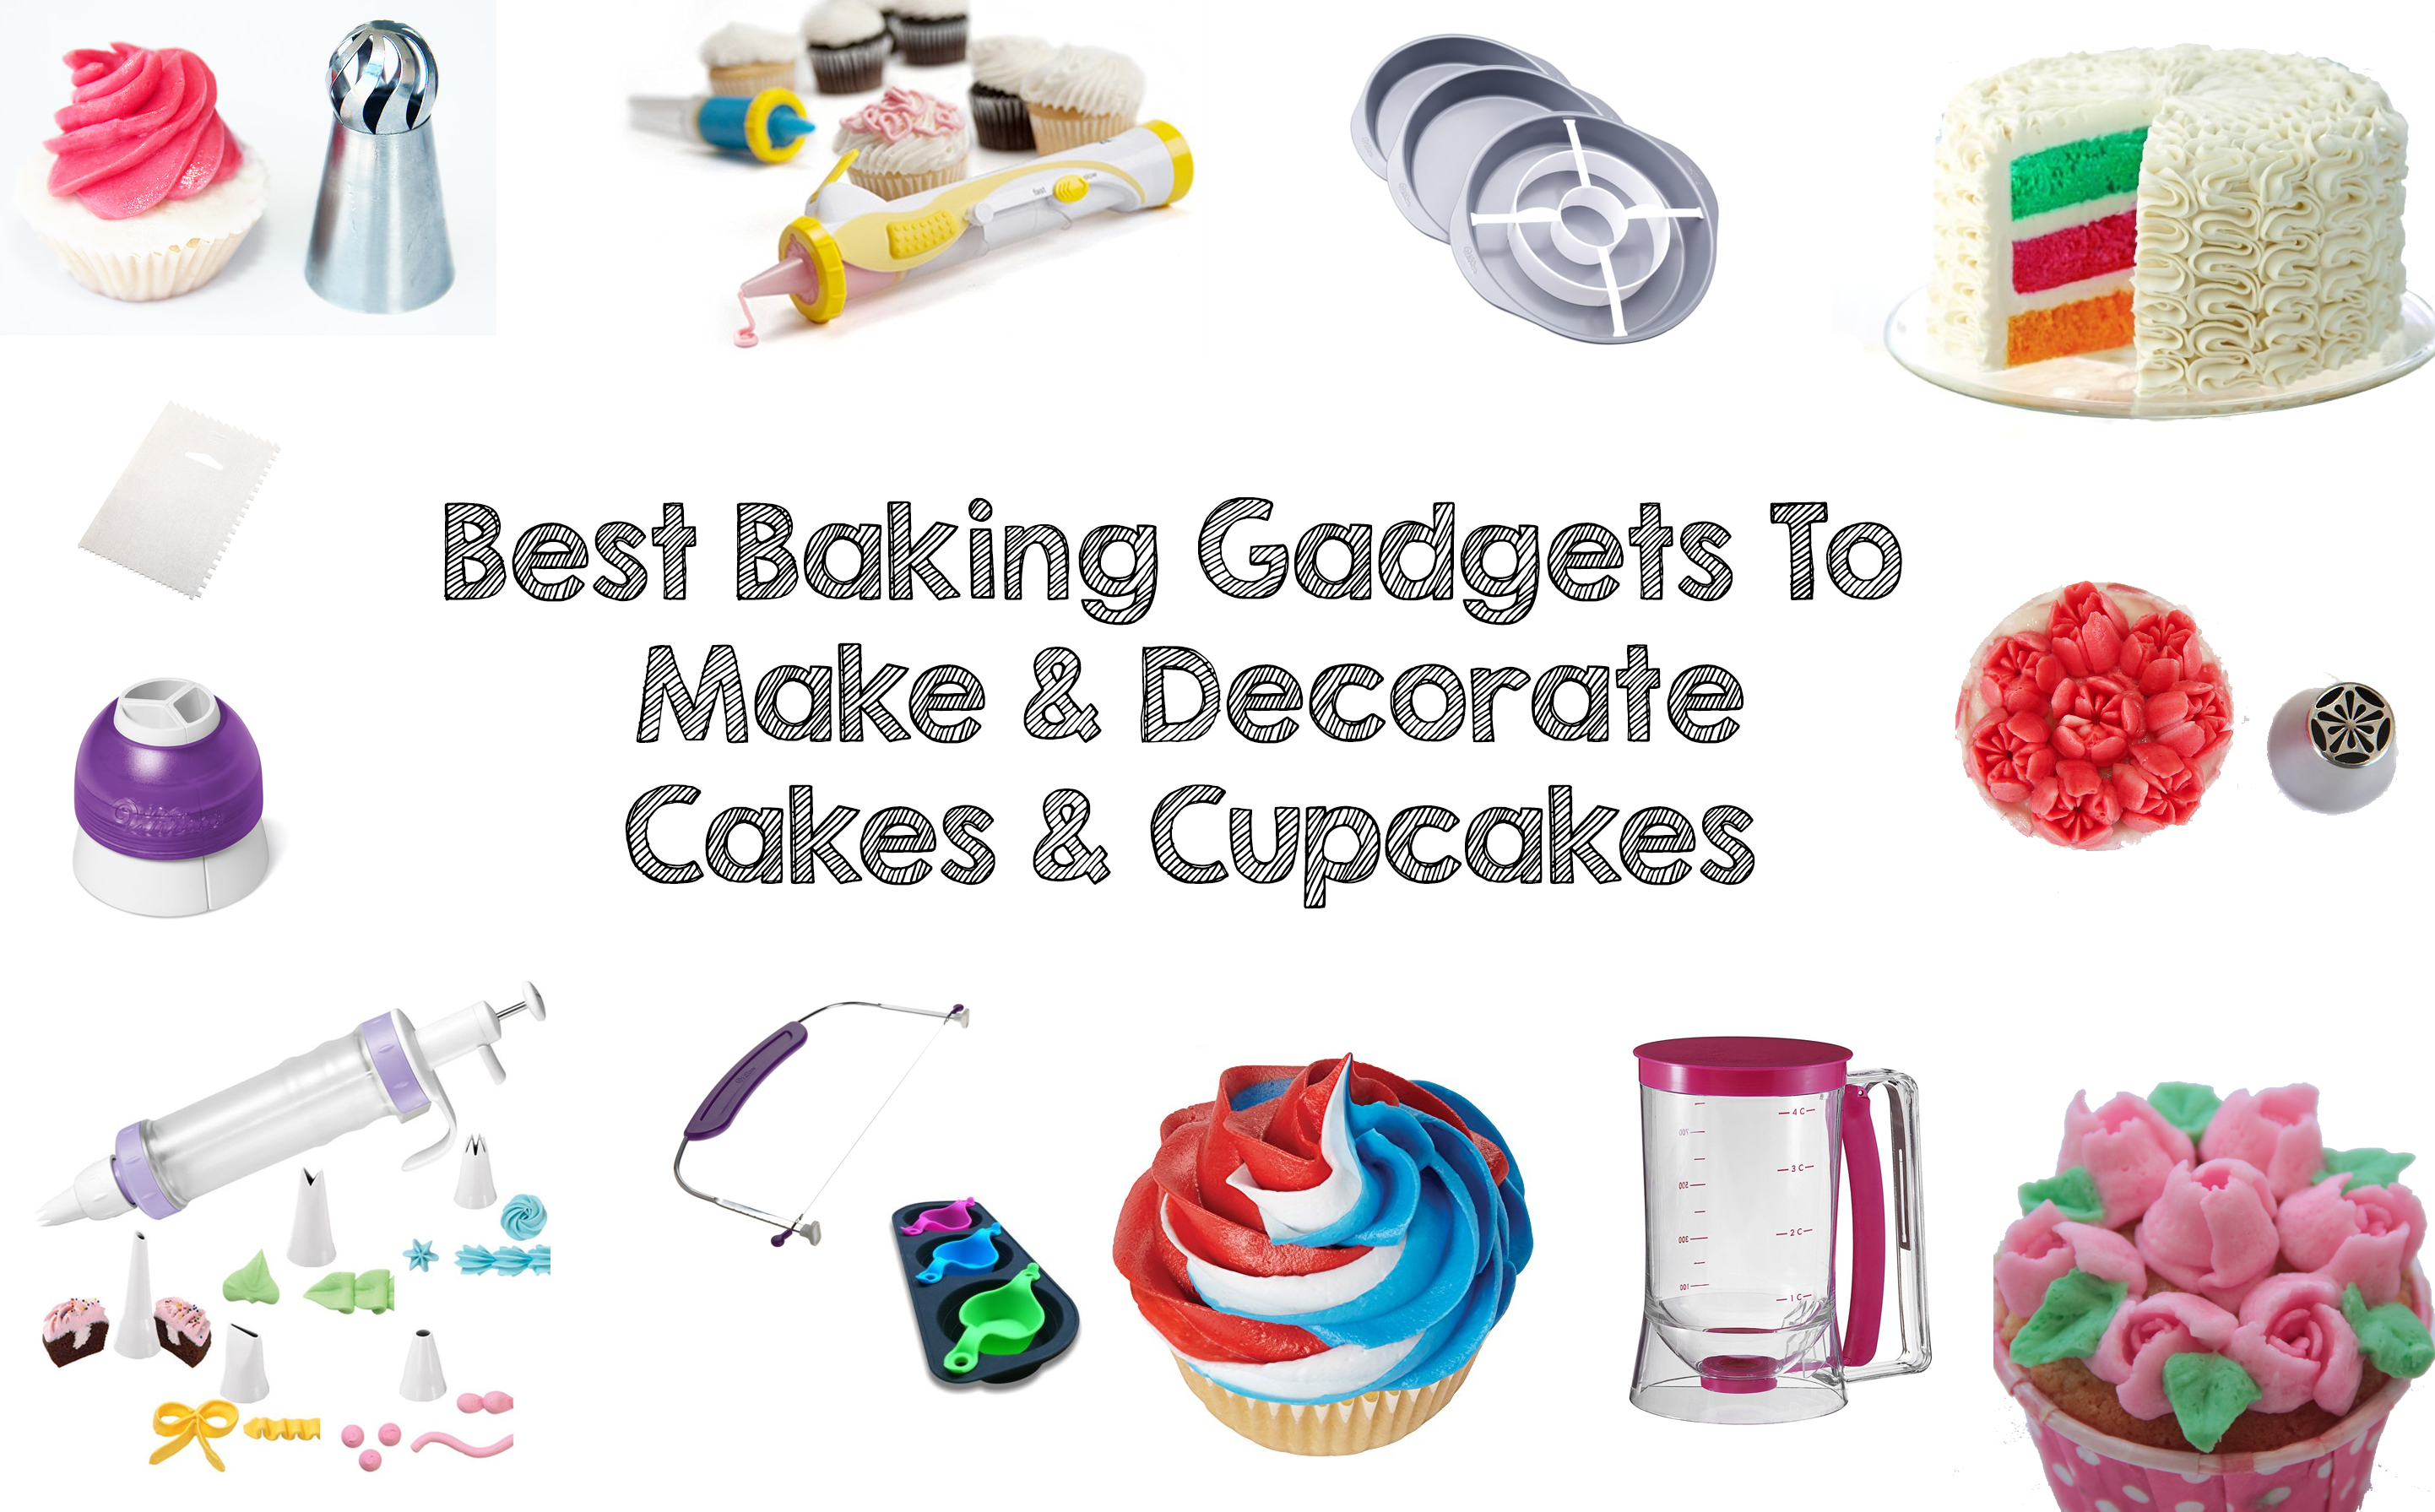 best baking gadgets Macaron Kit 2016 - Walyou